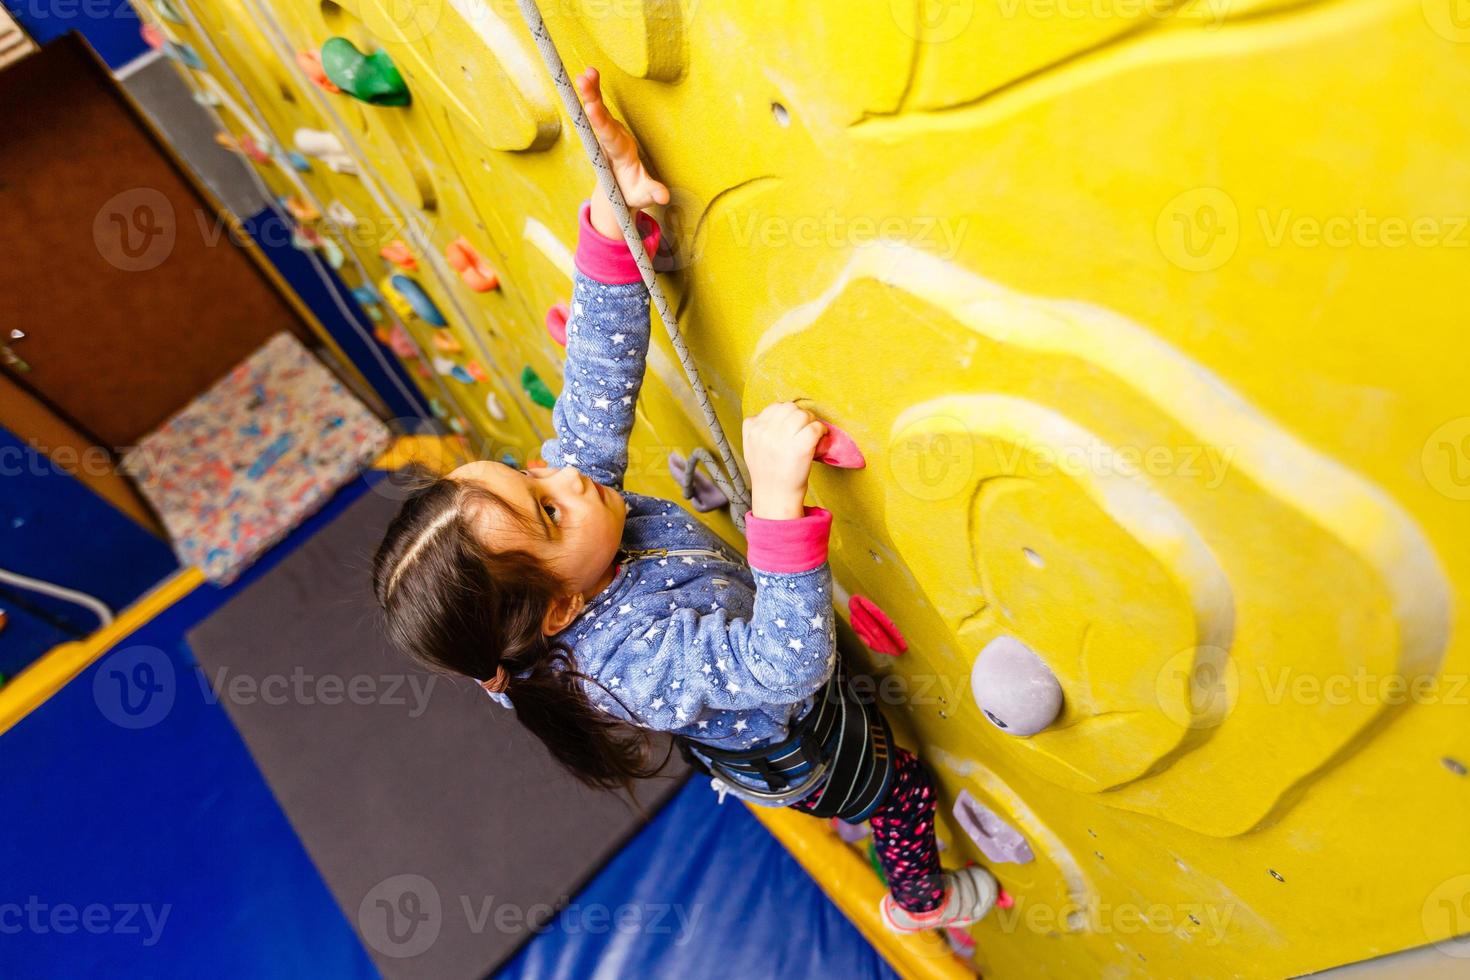 Little girl climbing a rock wall indoor photo